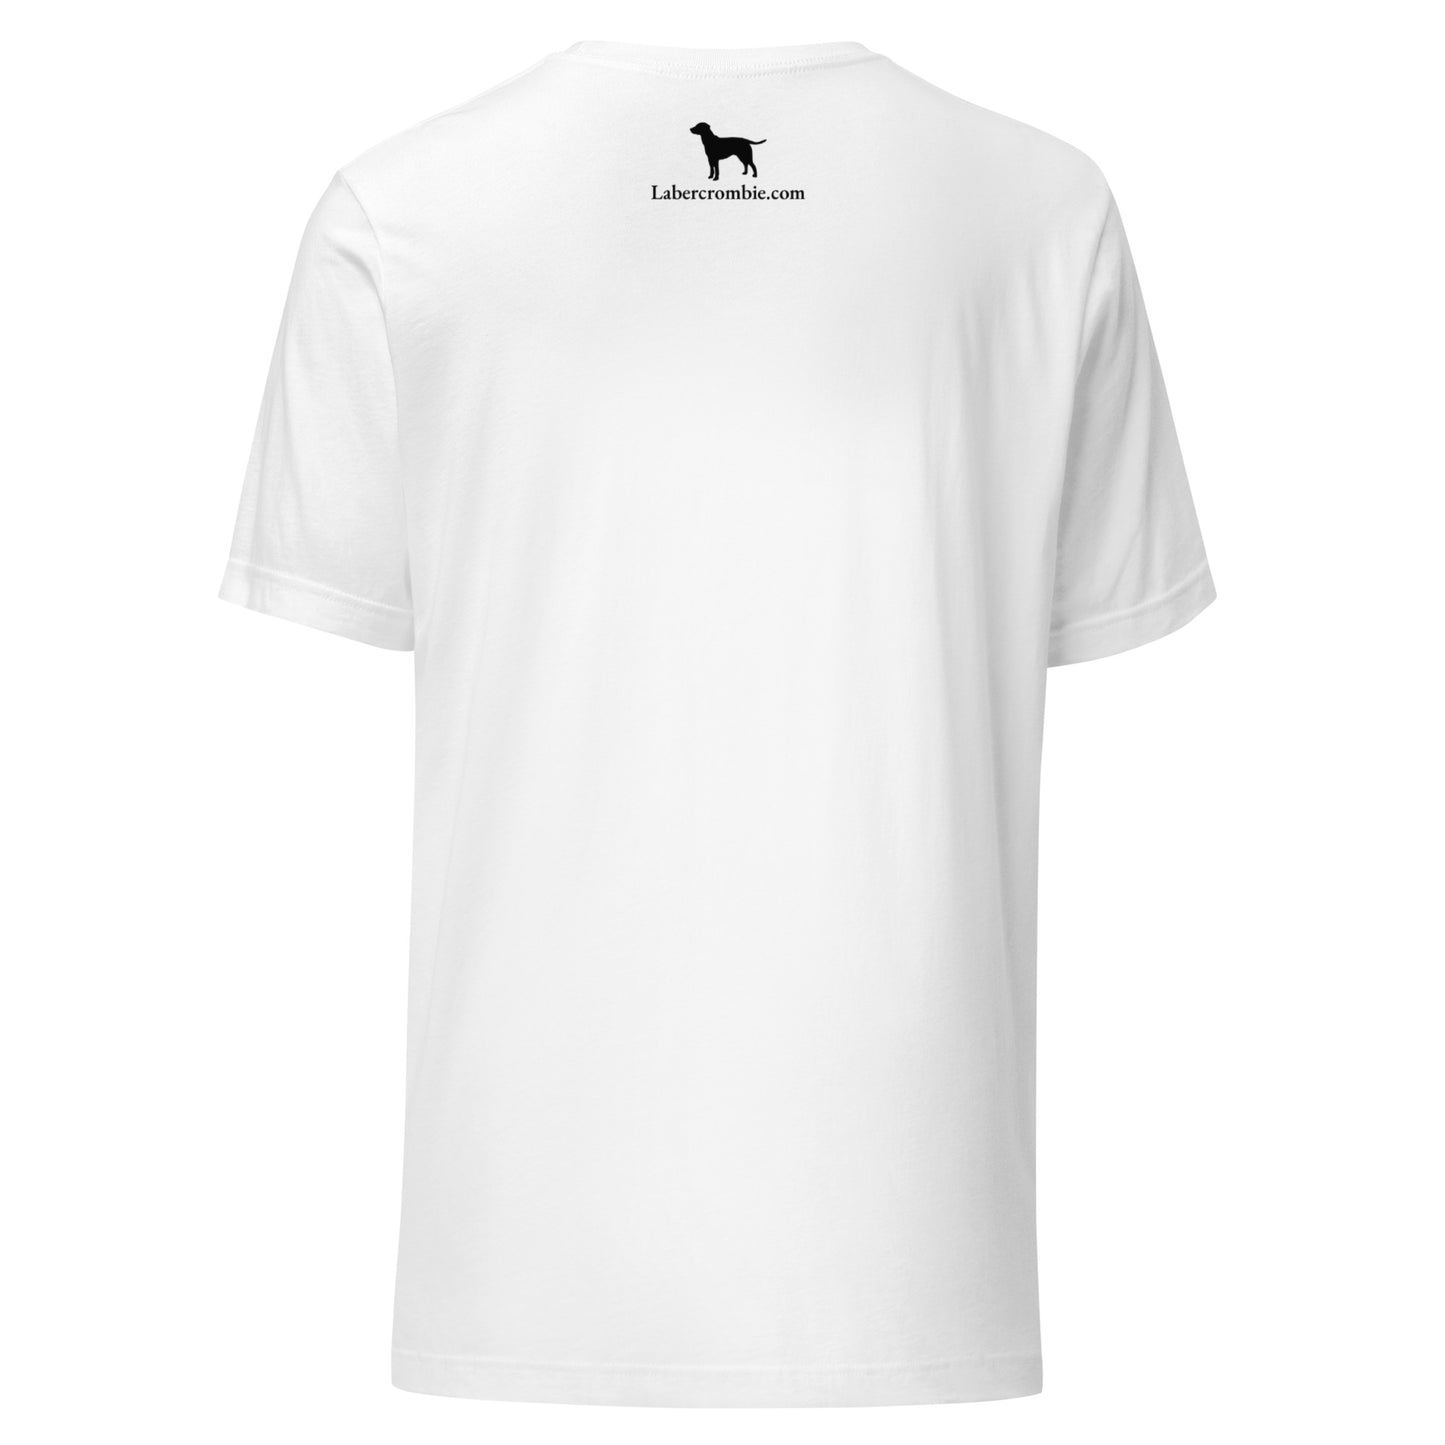 Pug Life Unisex t-shirt